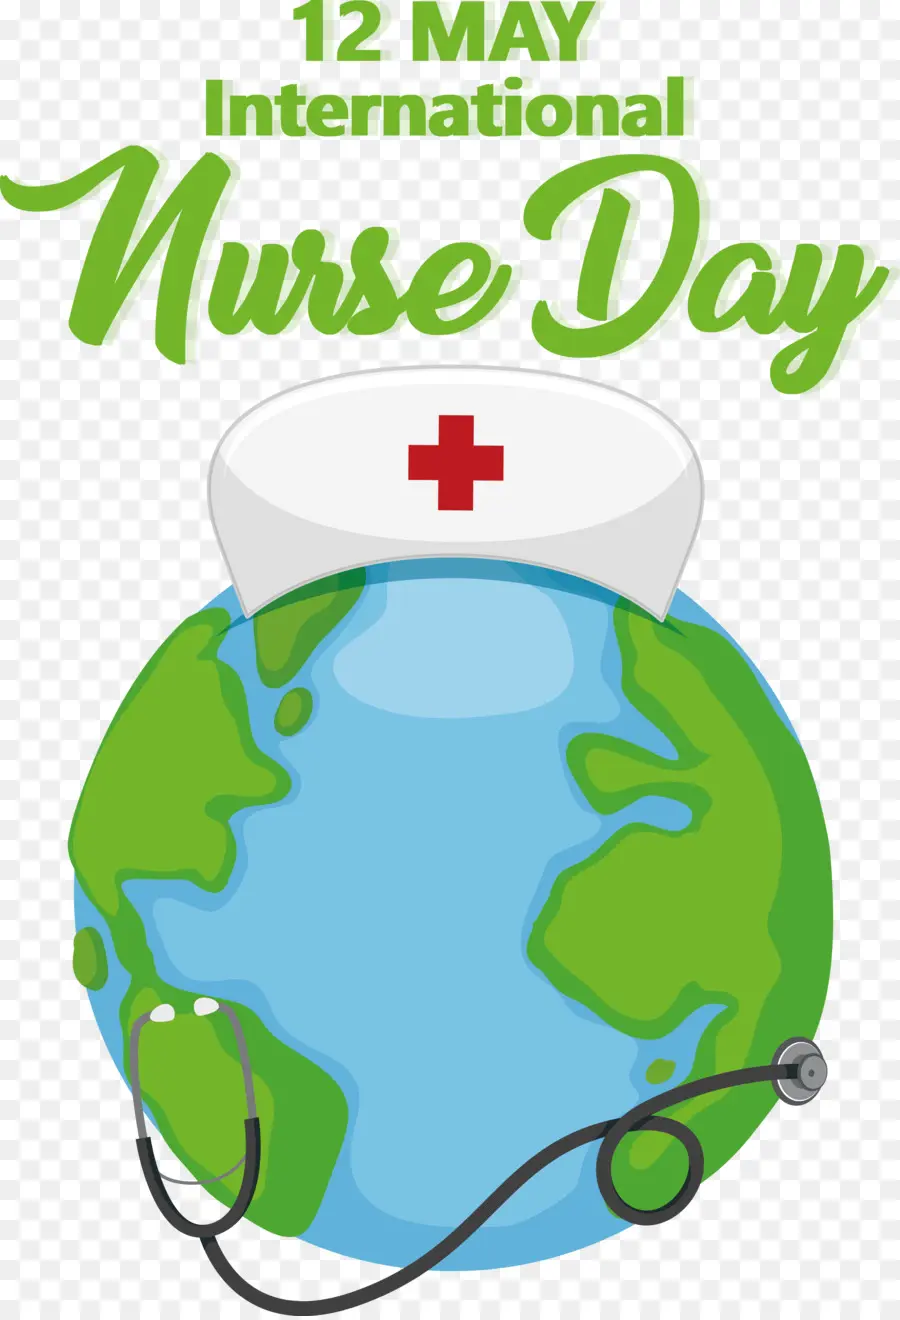 Tag der internationalen Krankenschwestern - 